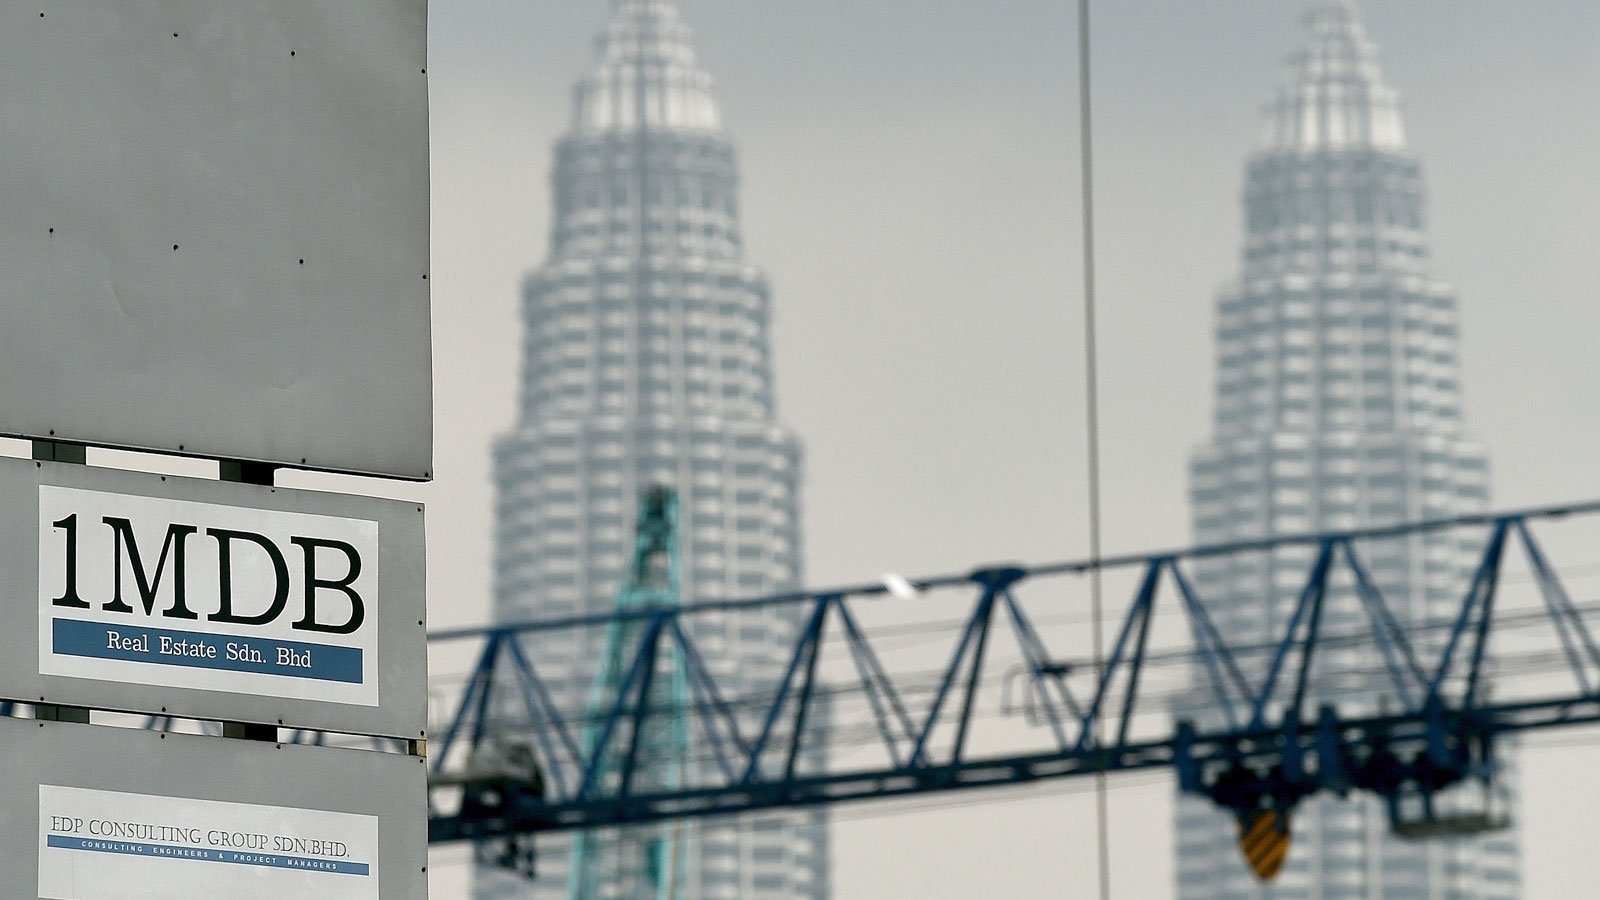 تقرير وحدة التحريات المالية الكويتية حول الصندوق الماليزي